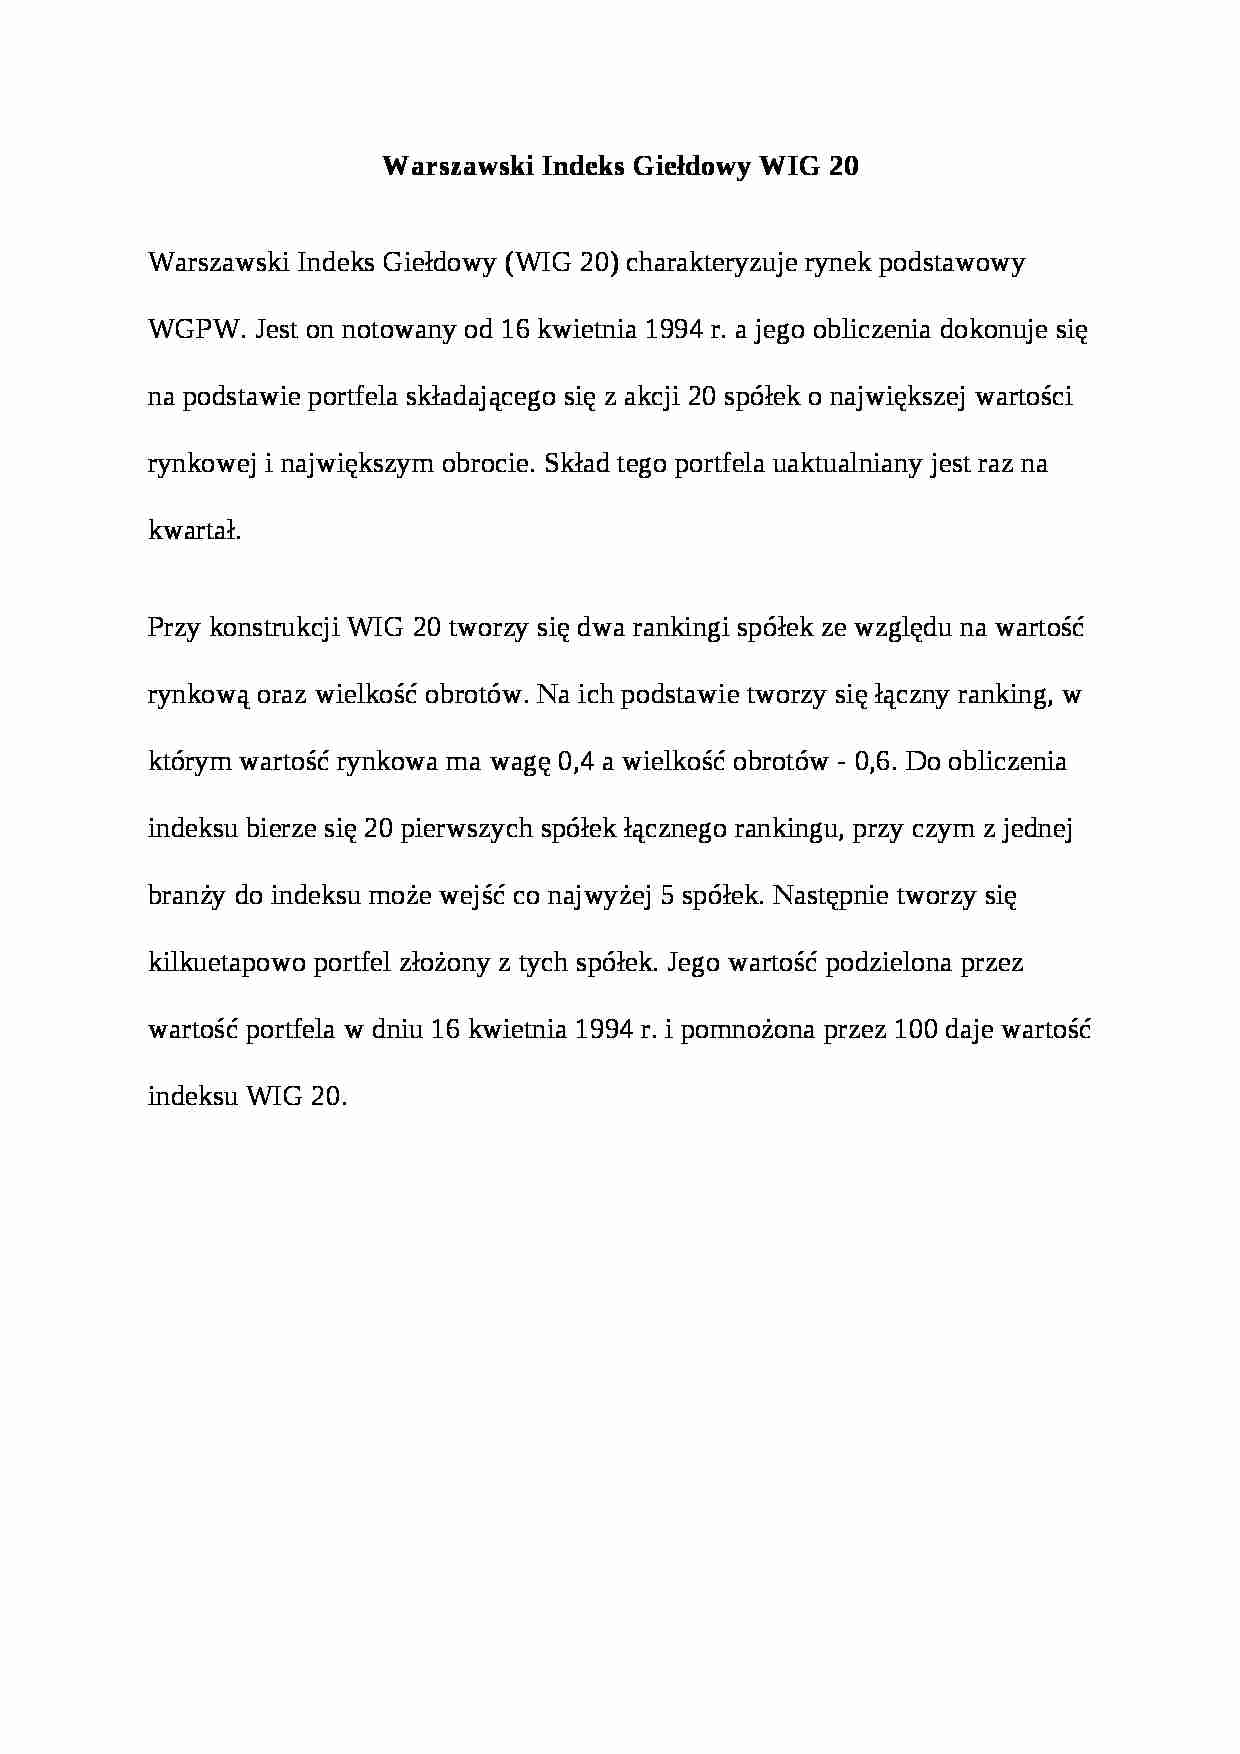 Warszawski indeks giełdowy WIG 20 - wykład - strona 1